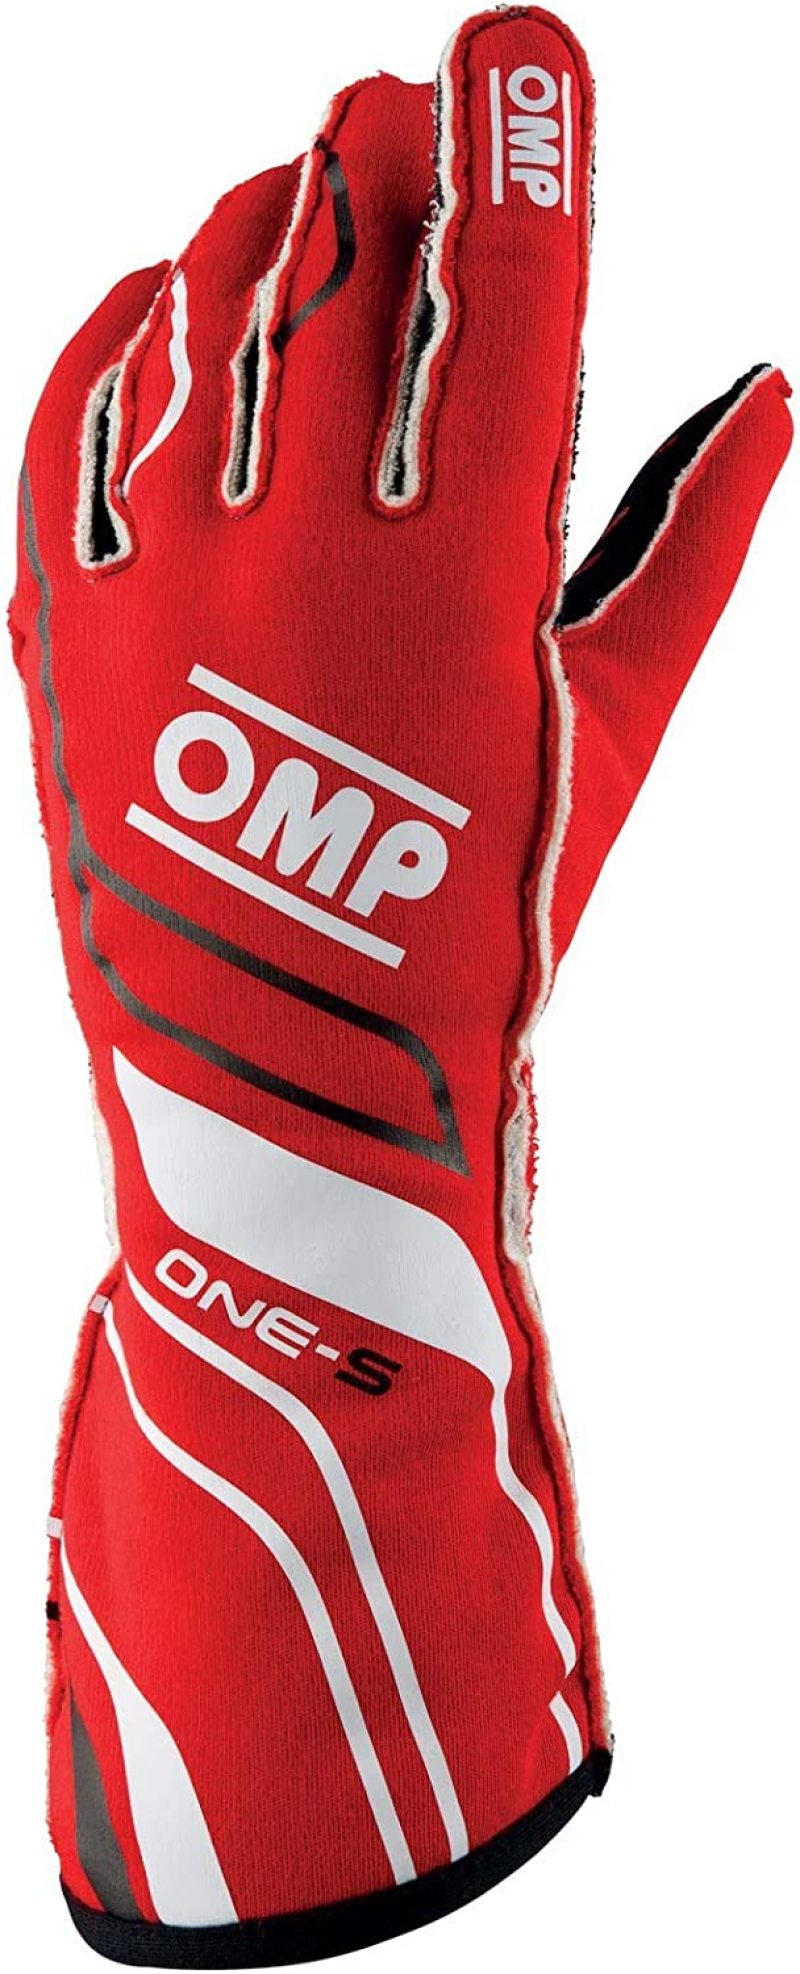 OMP One-S Gloves Red - Size XL Fia 8556-2018 - IB0-0770-A01-061-XL